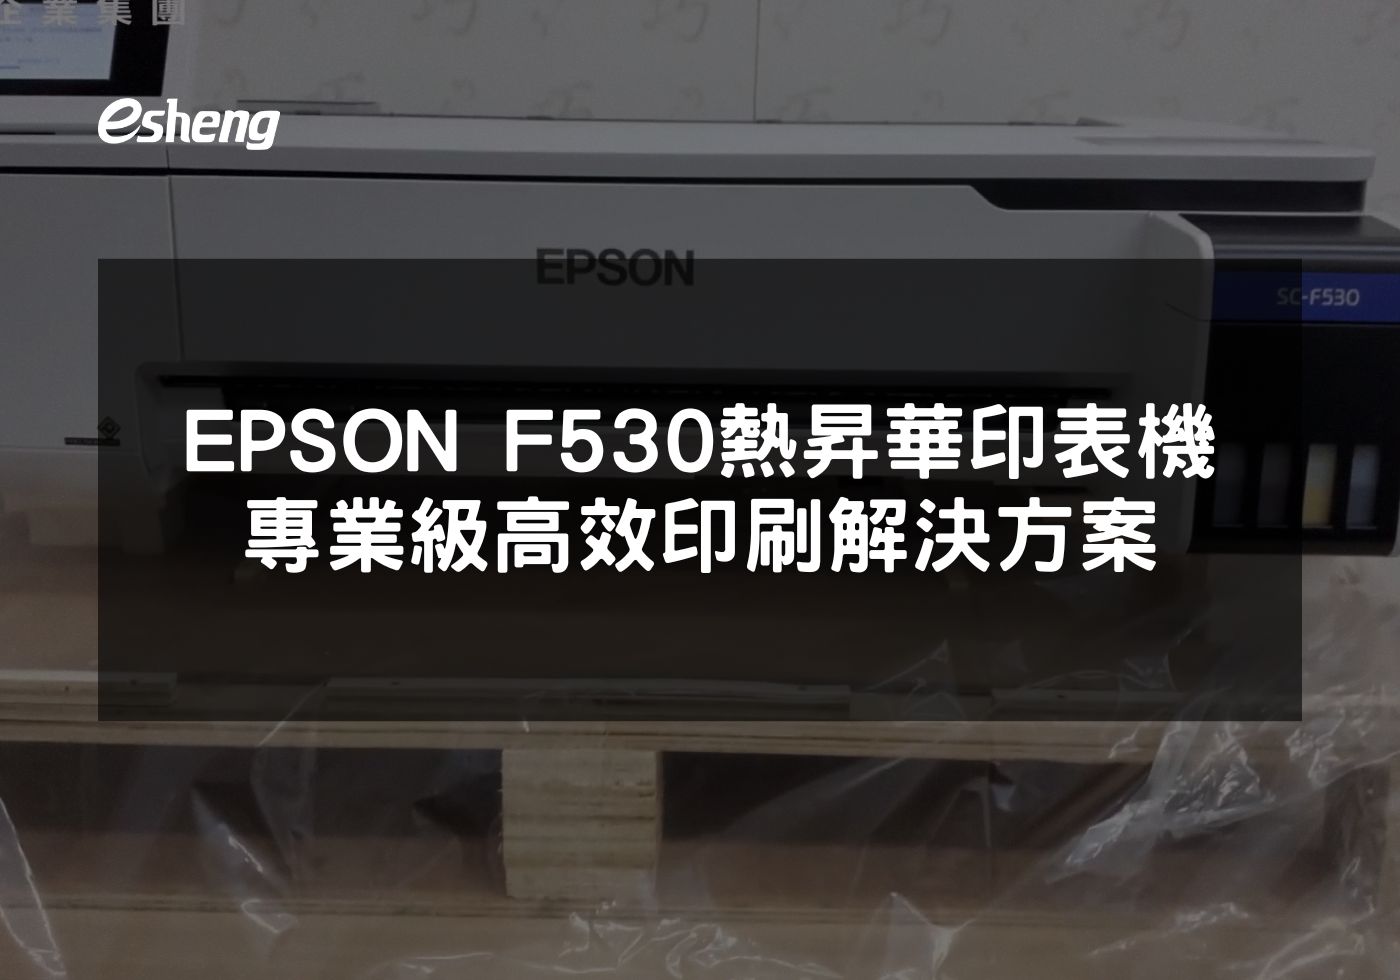 EPSON F530熱昇華印表機解析專業印刷解決方案